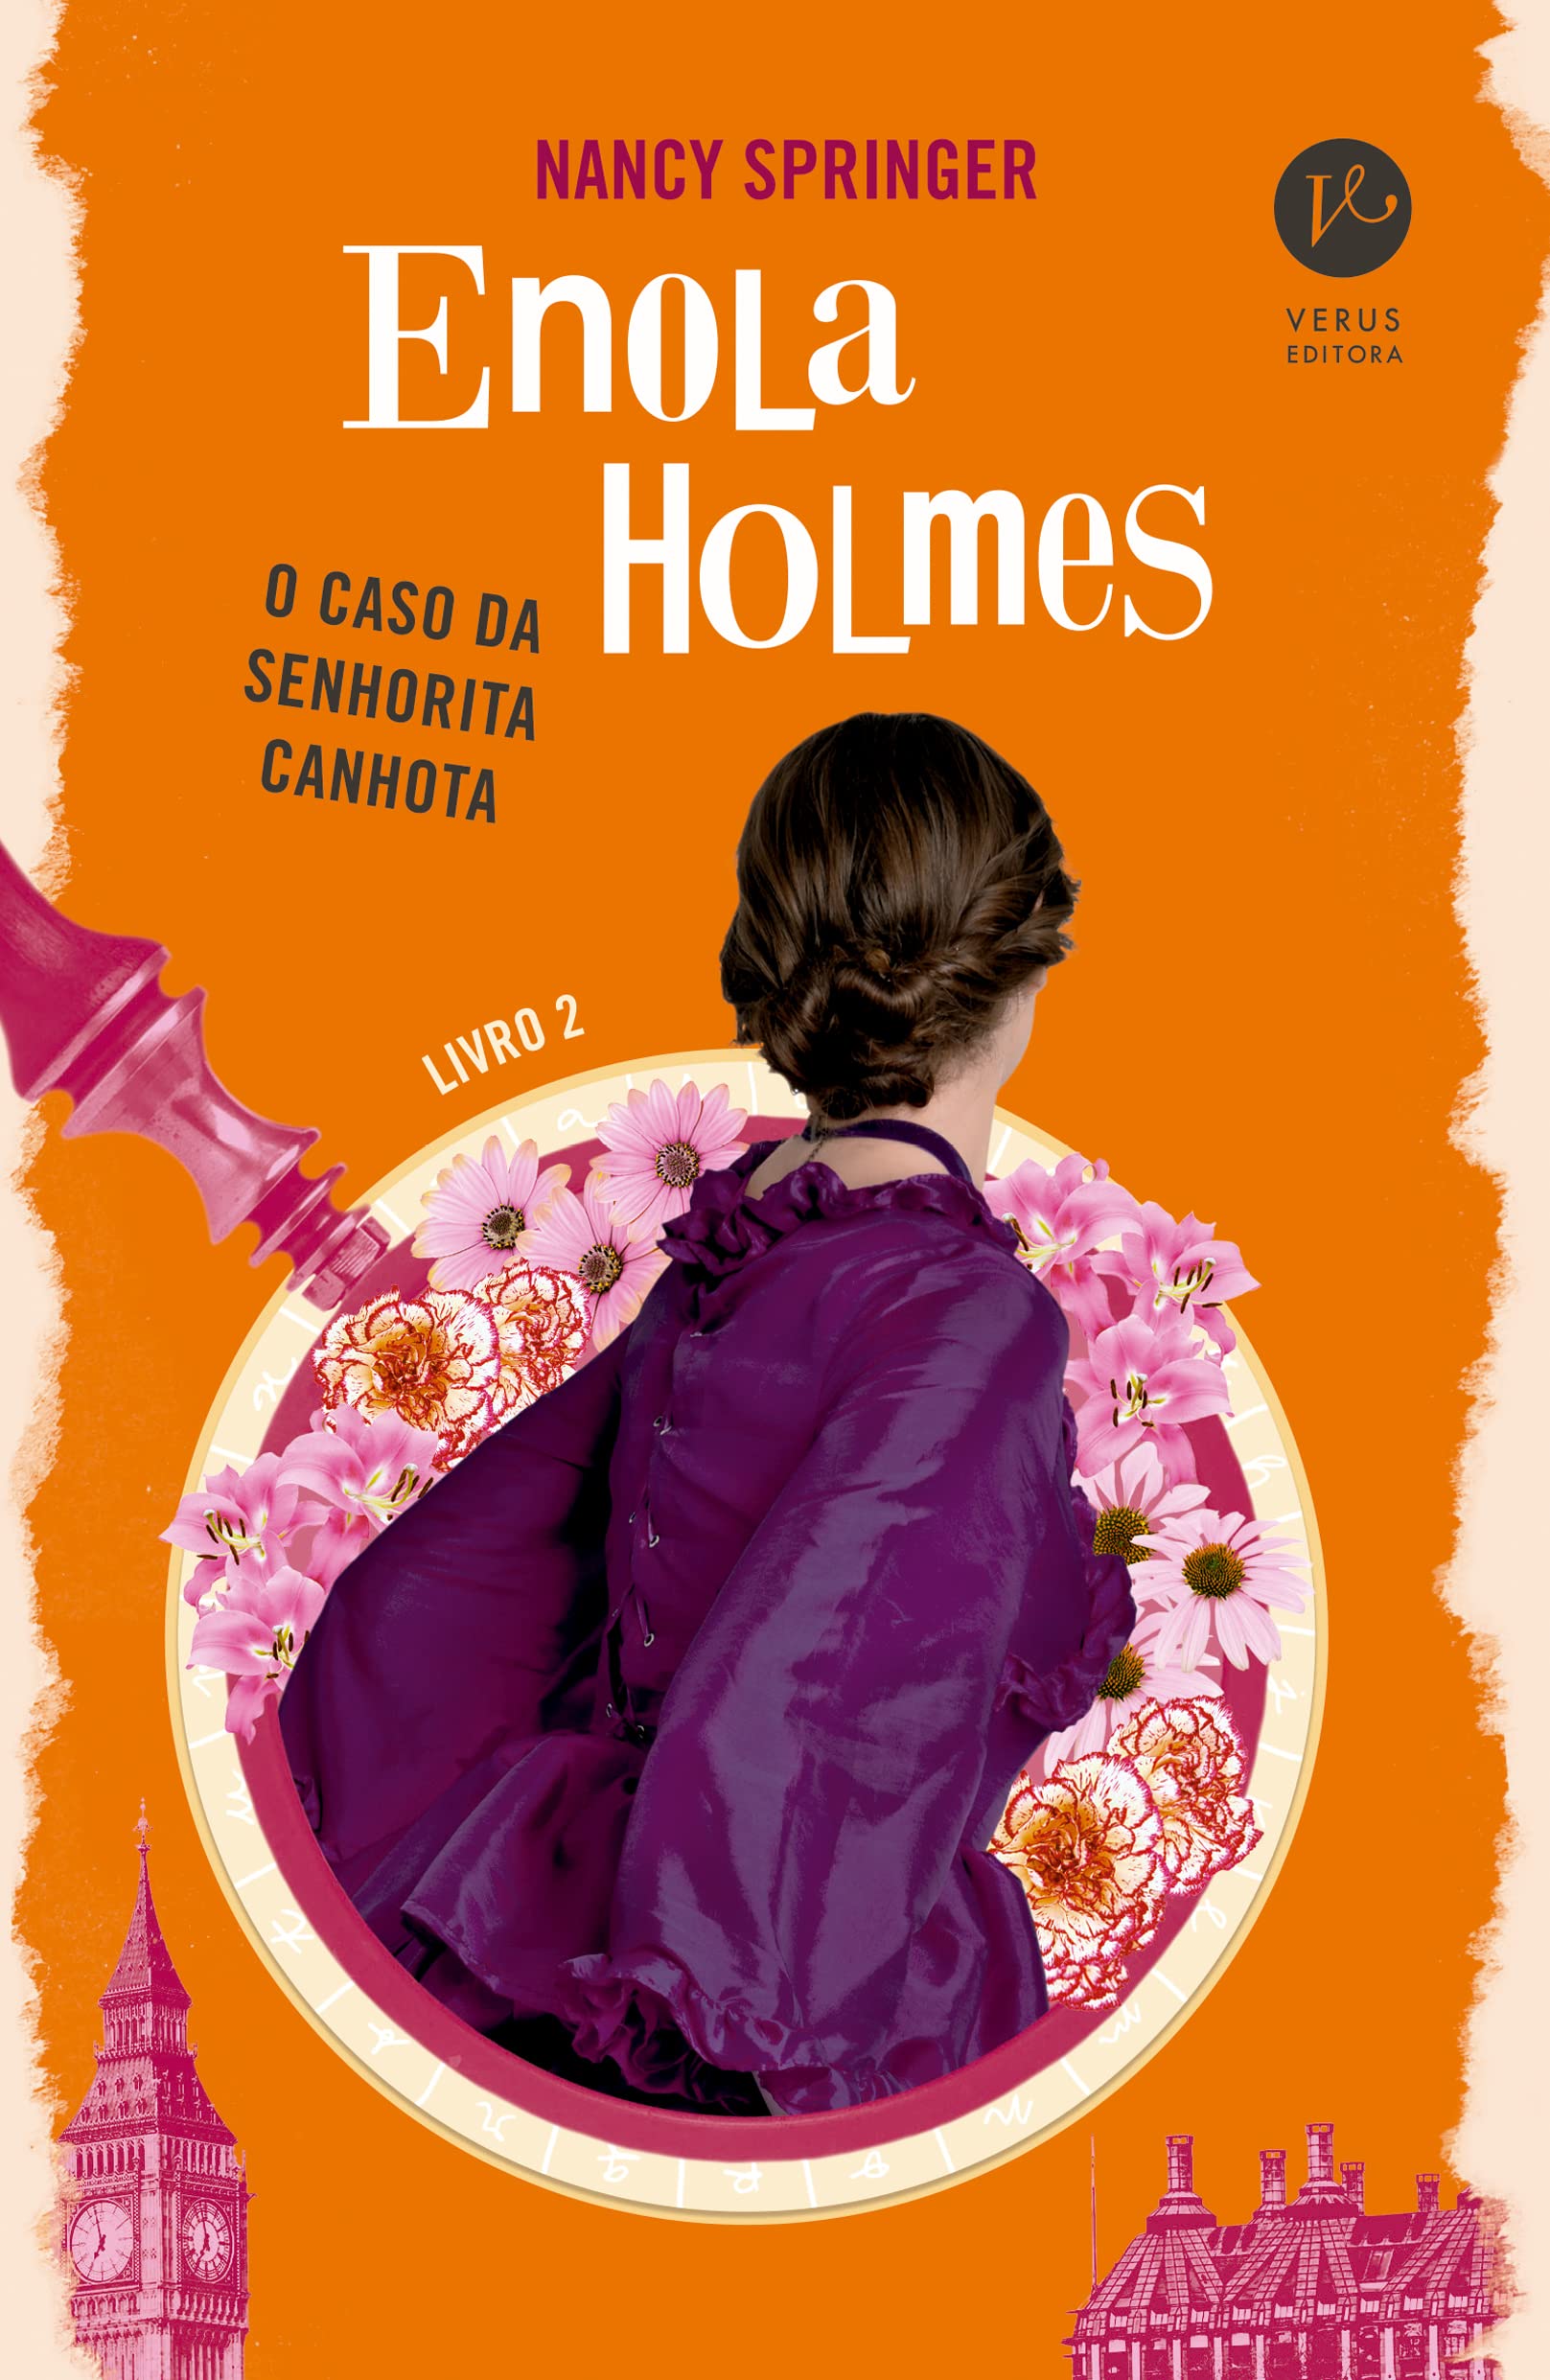 Resenha do Livro: Enola Holmes O Caso Da Senhorita Conhota